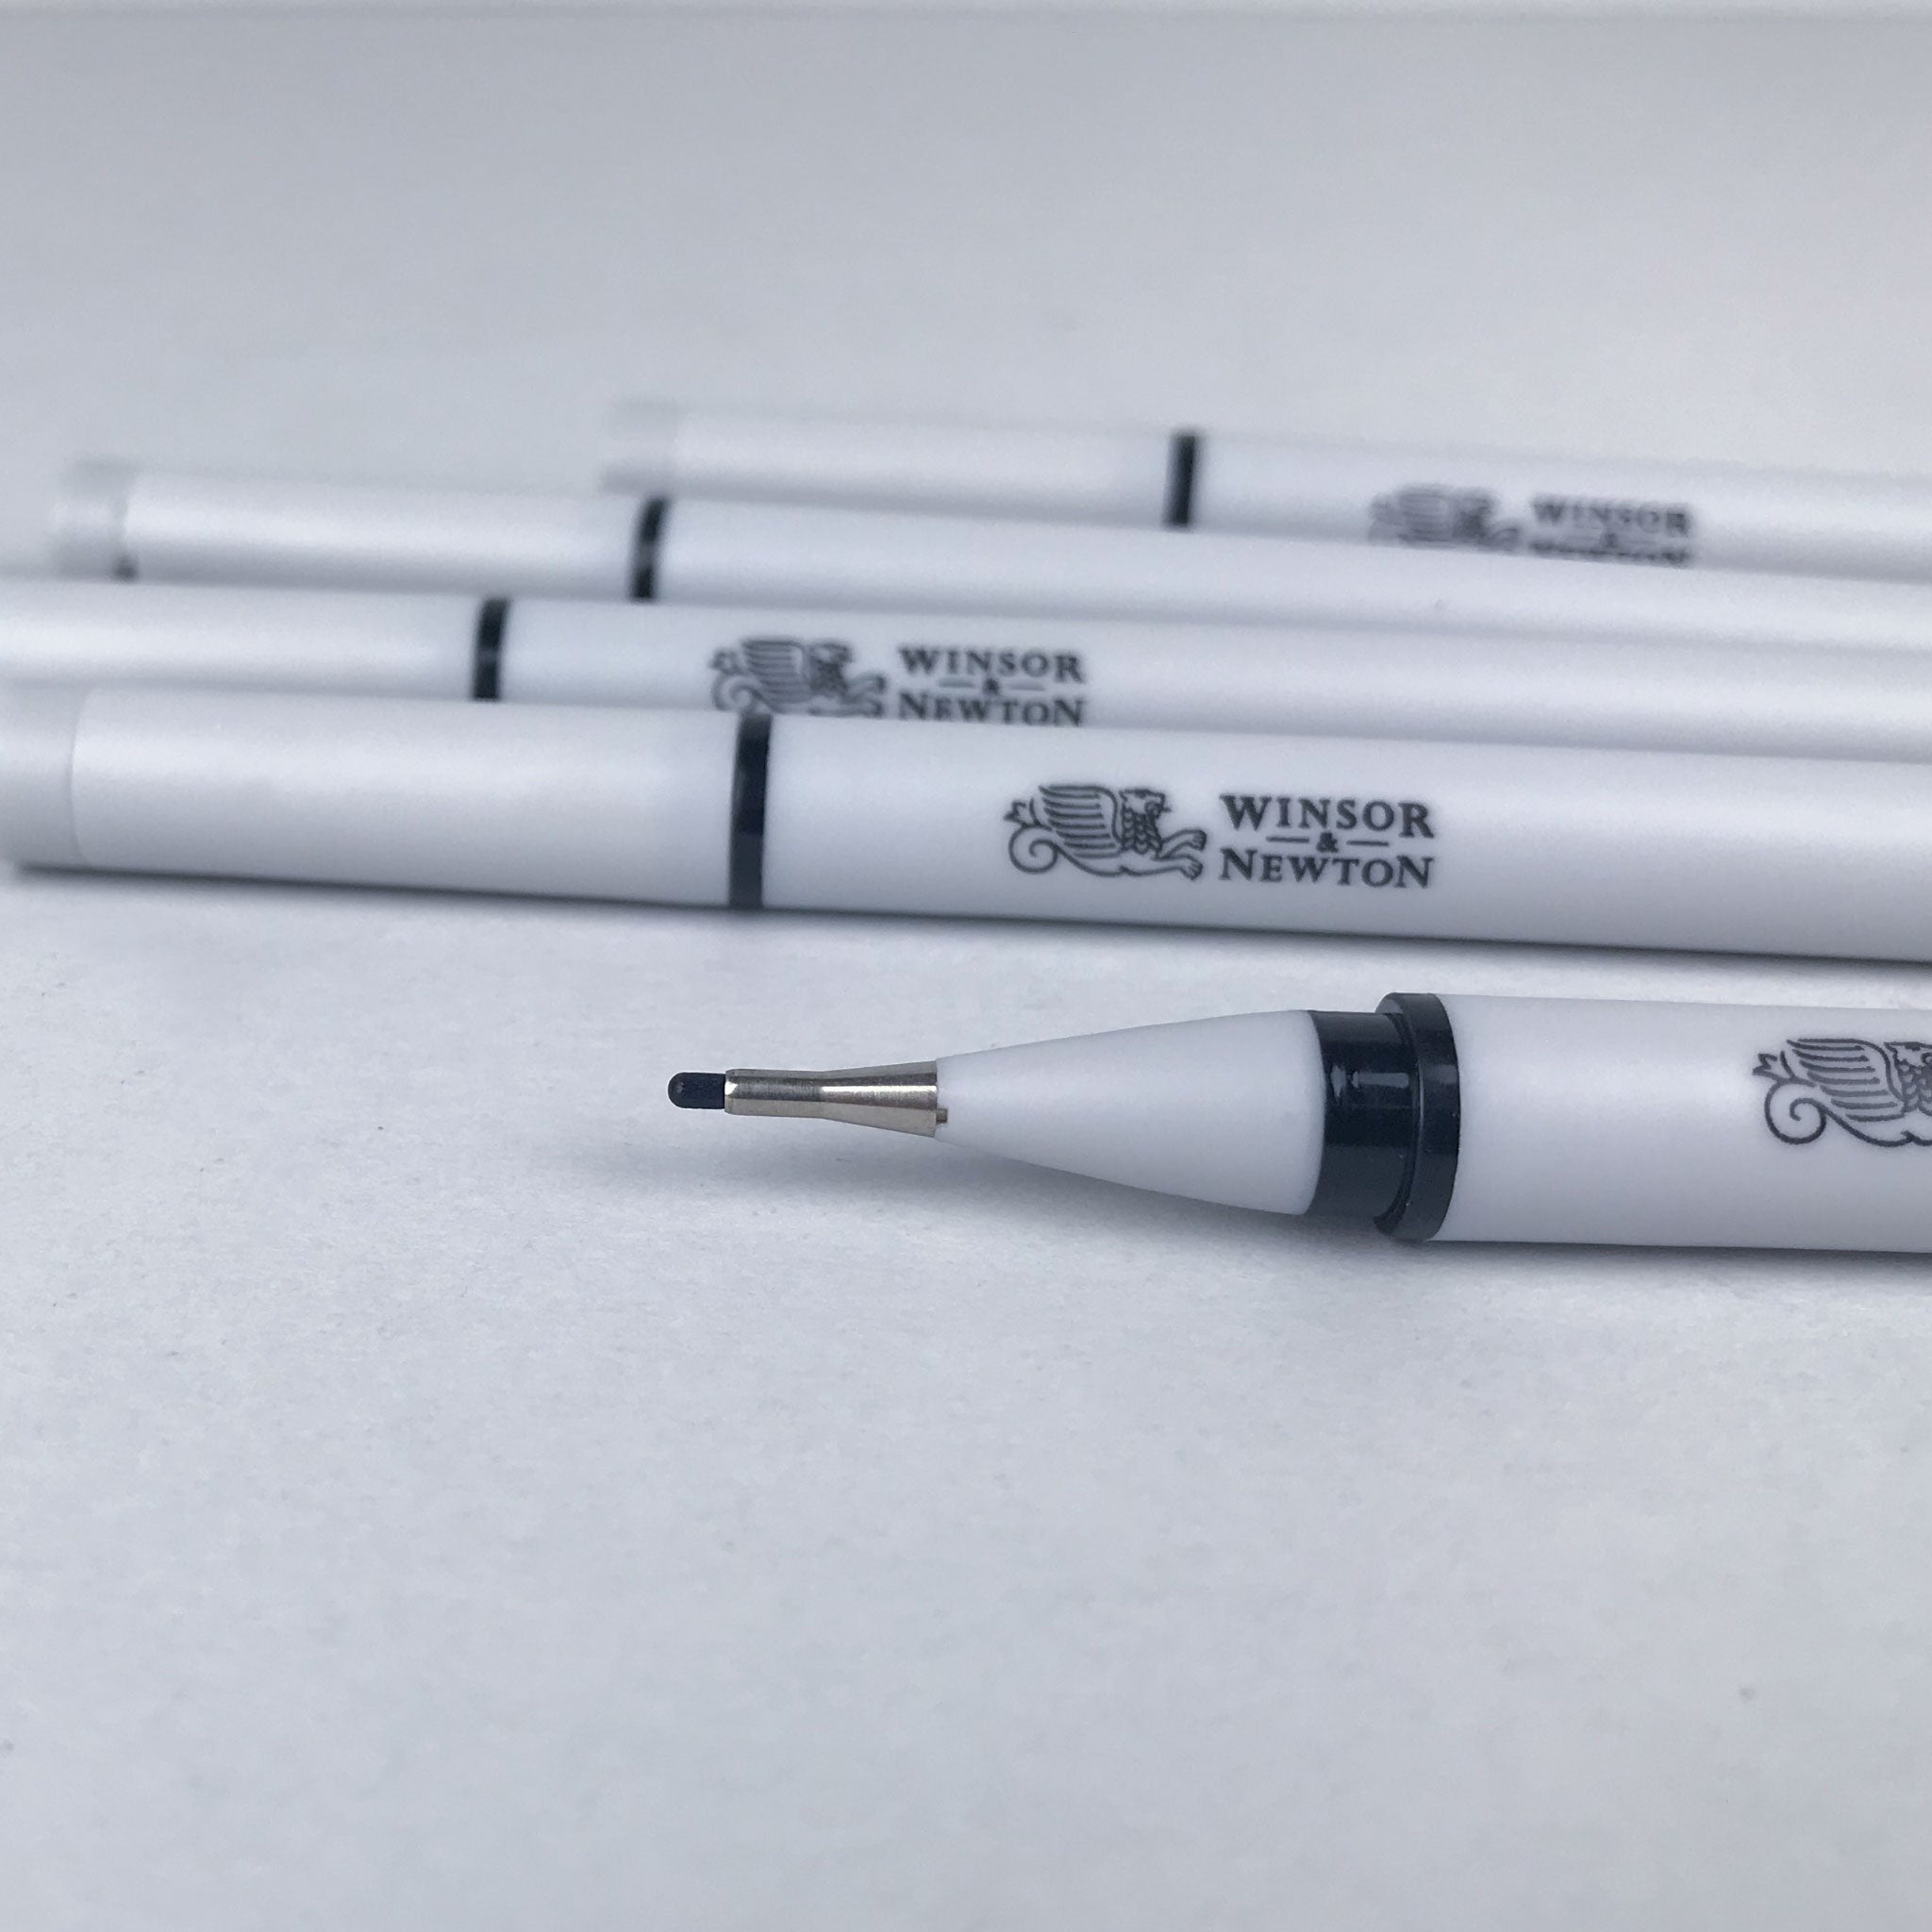 Fineliner Pens Sets - Winsor & Newton Fineliners